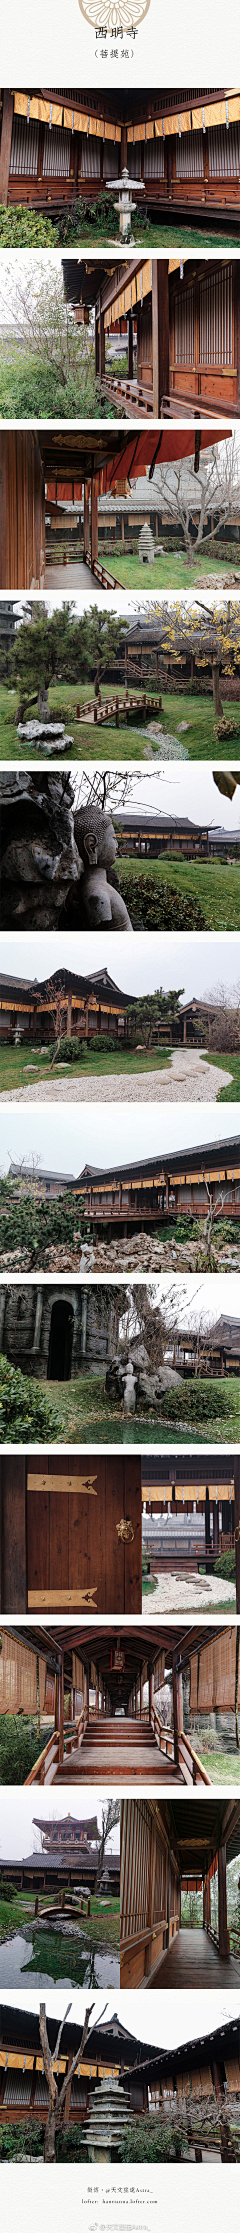 安安软装采集到日式庭院设计实景